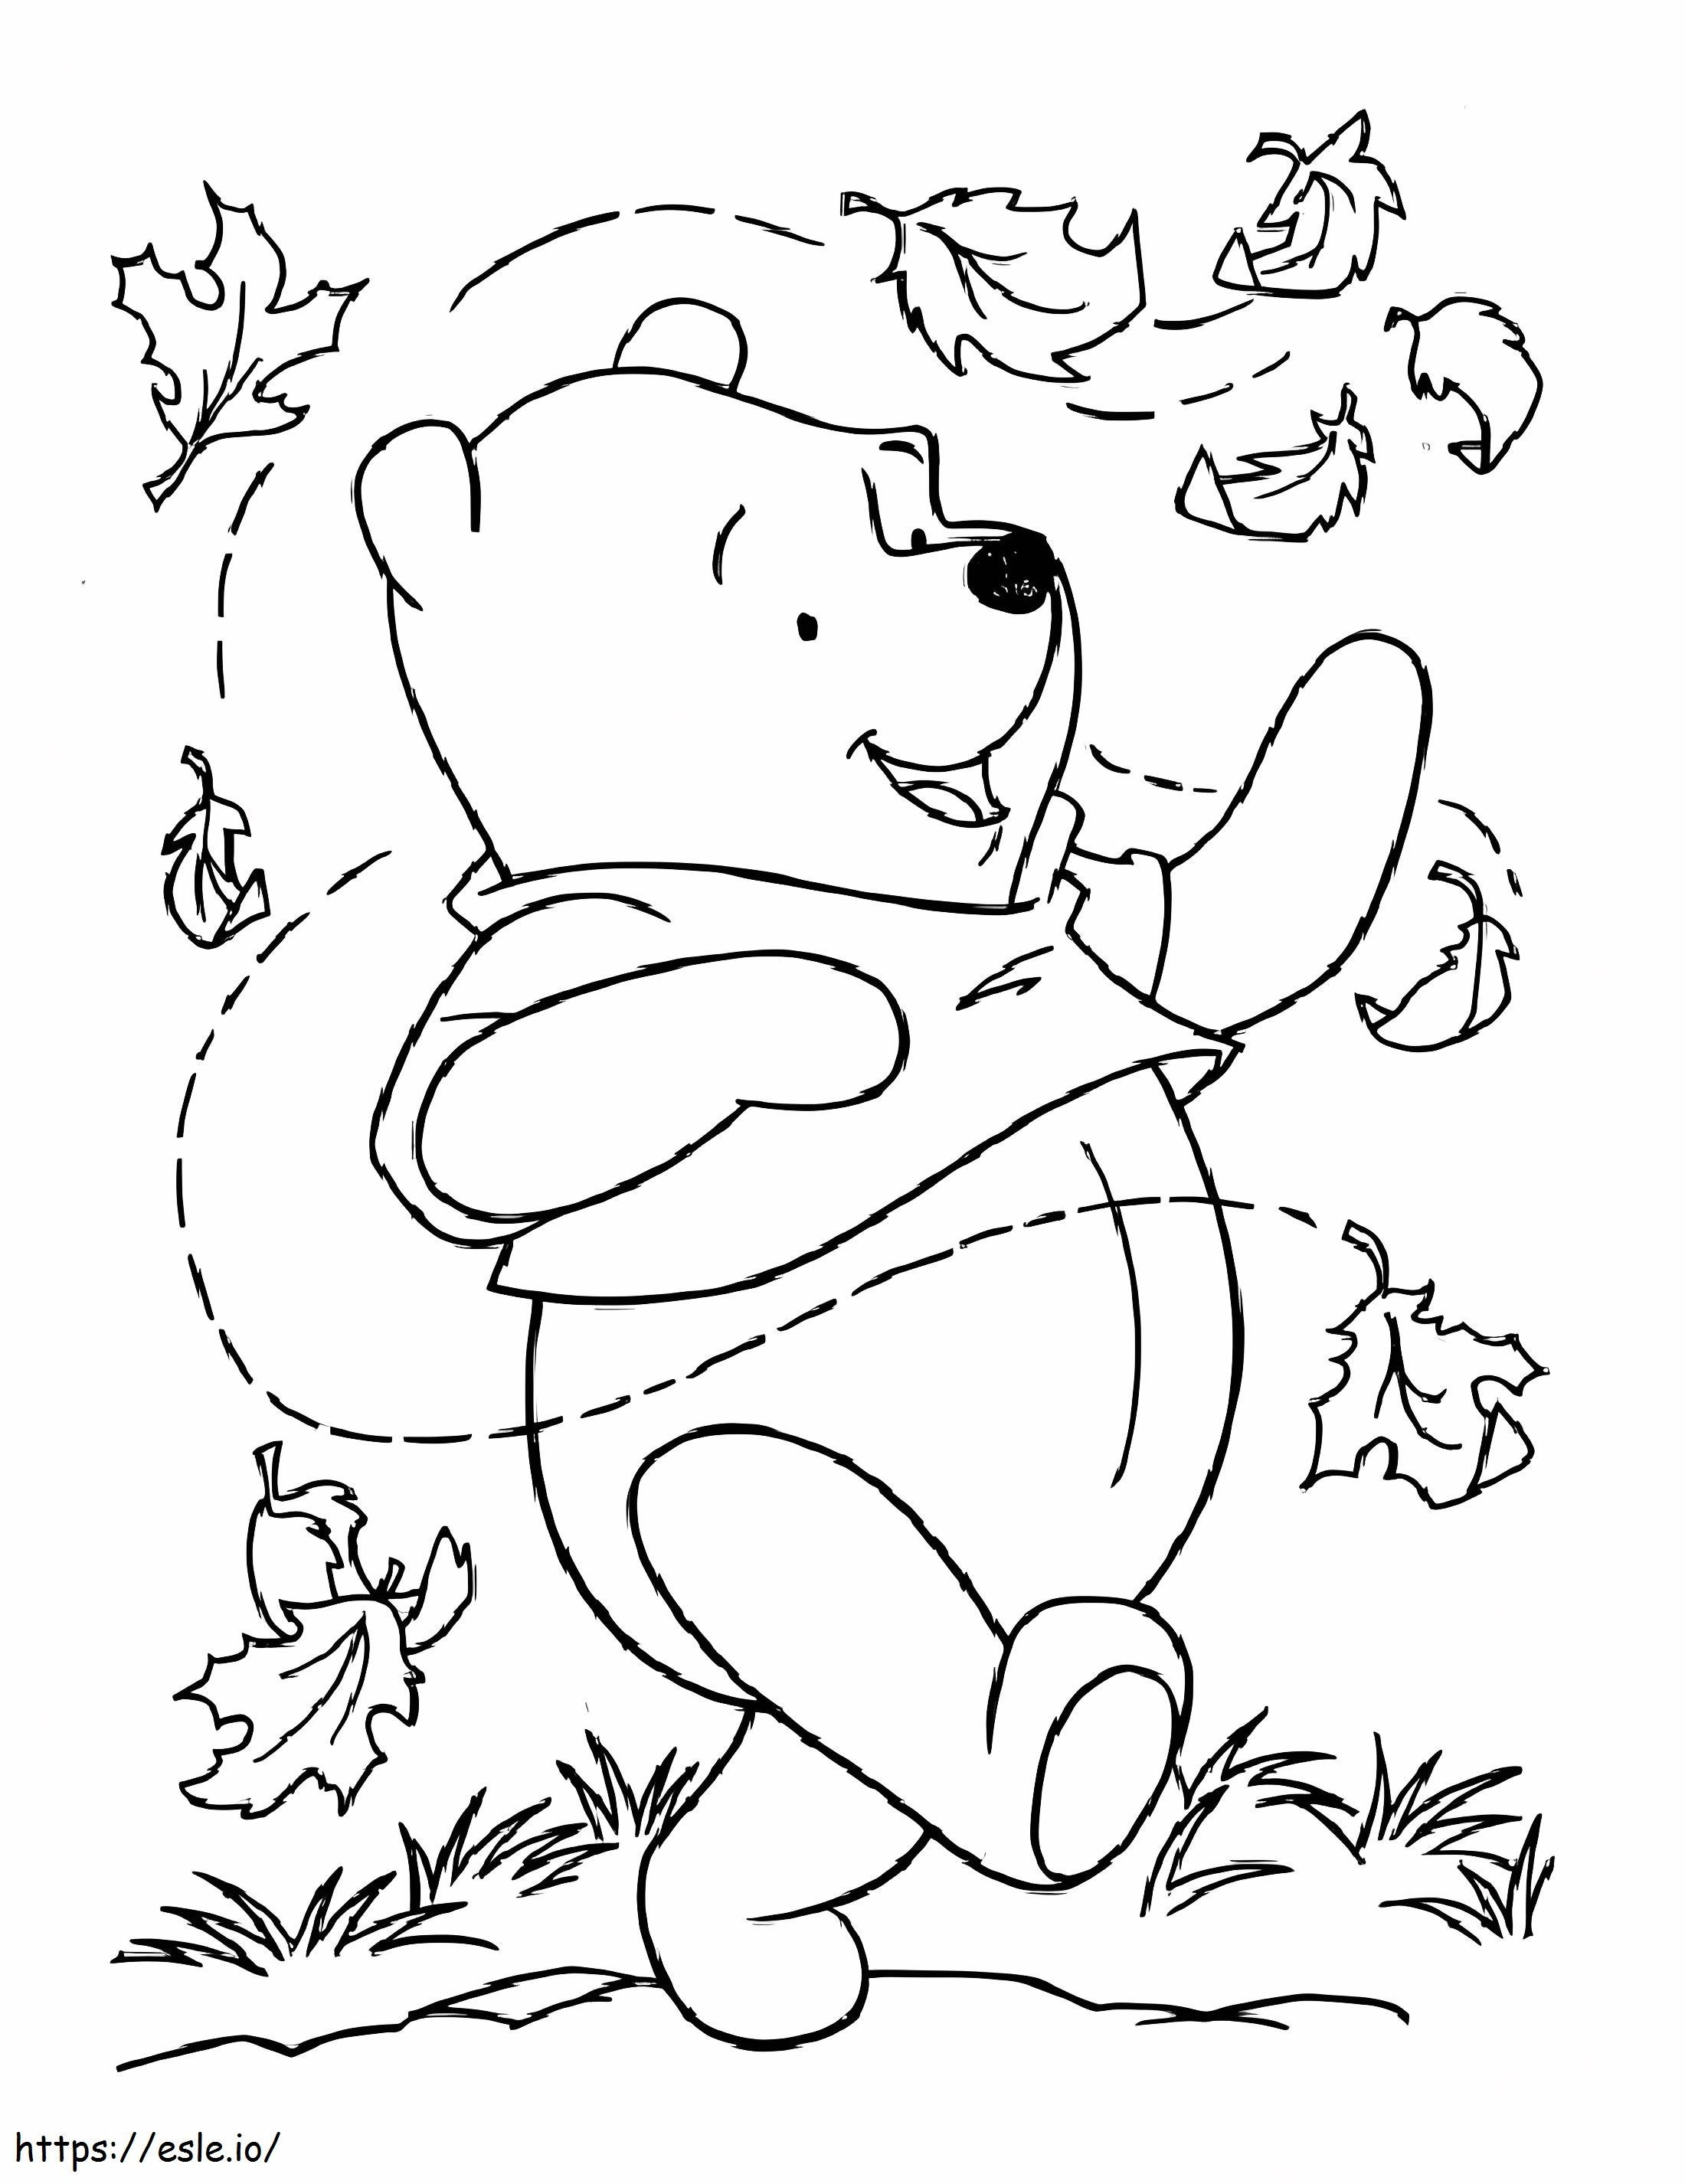 Grande Ursinho Pooh para colorir